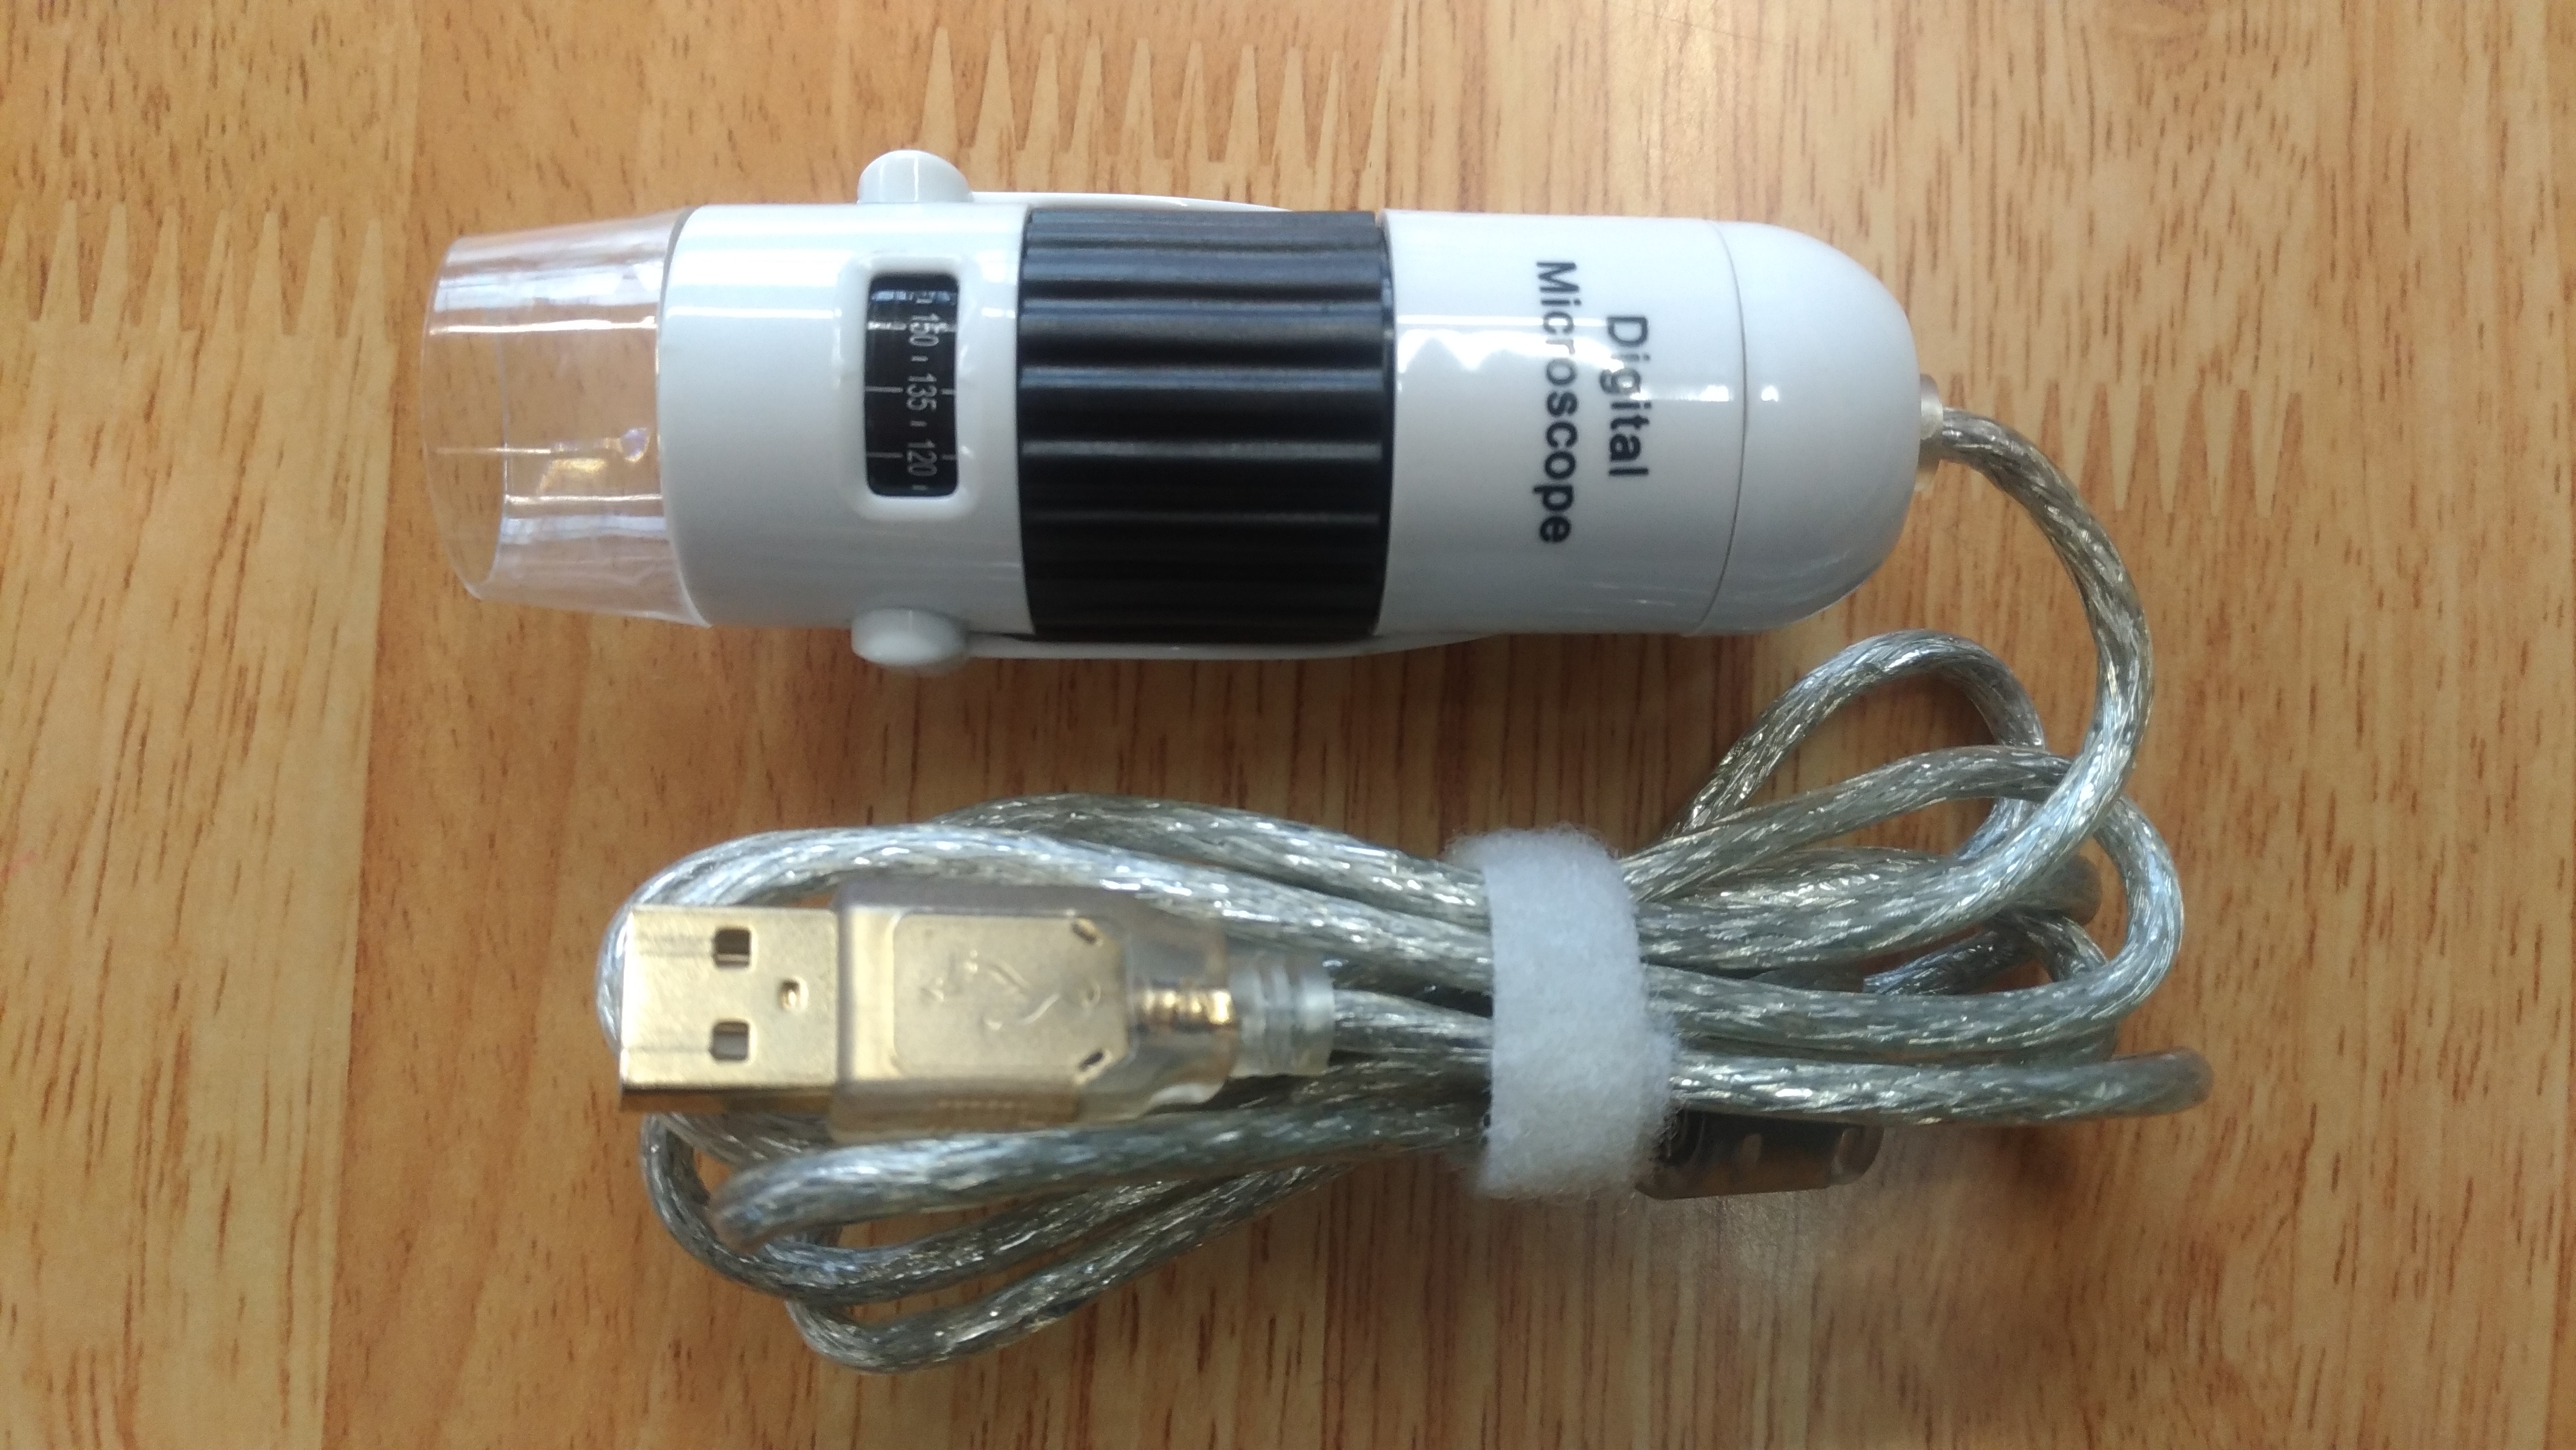 USBデジタルマイクロ顕微鏡「秀マイクロン」が便利